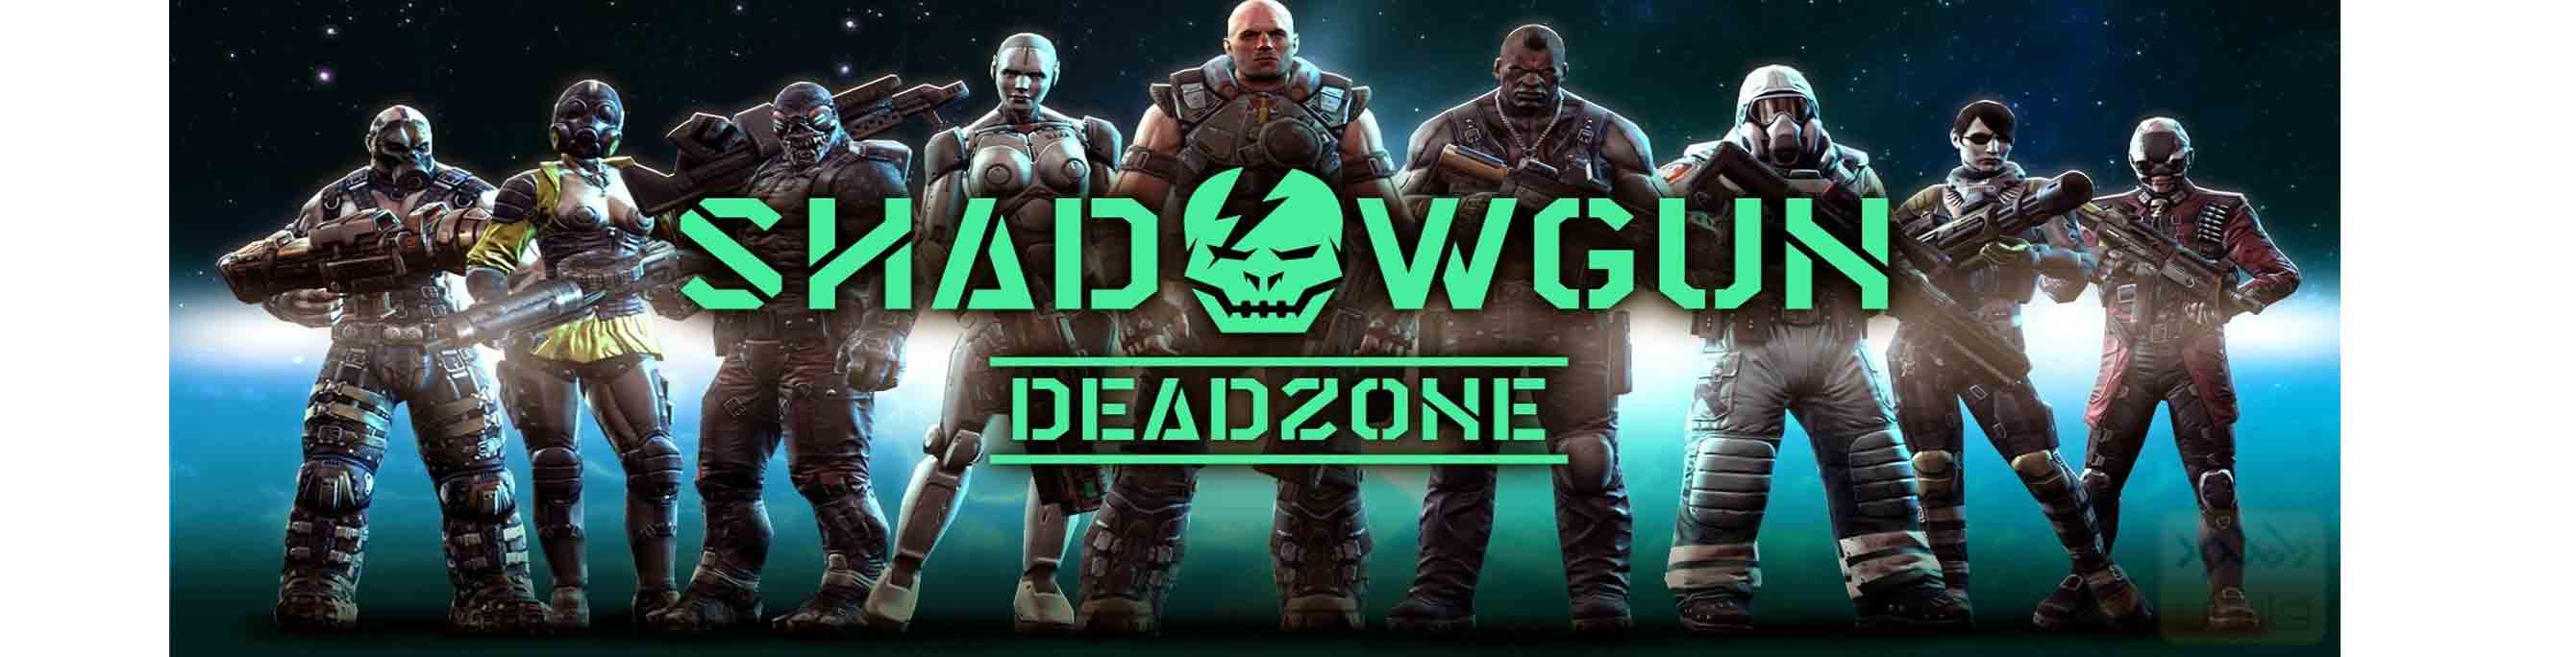 دانلود بازی SHADOWGUN DeadZone 2.6.0 برای اندروید